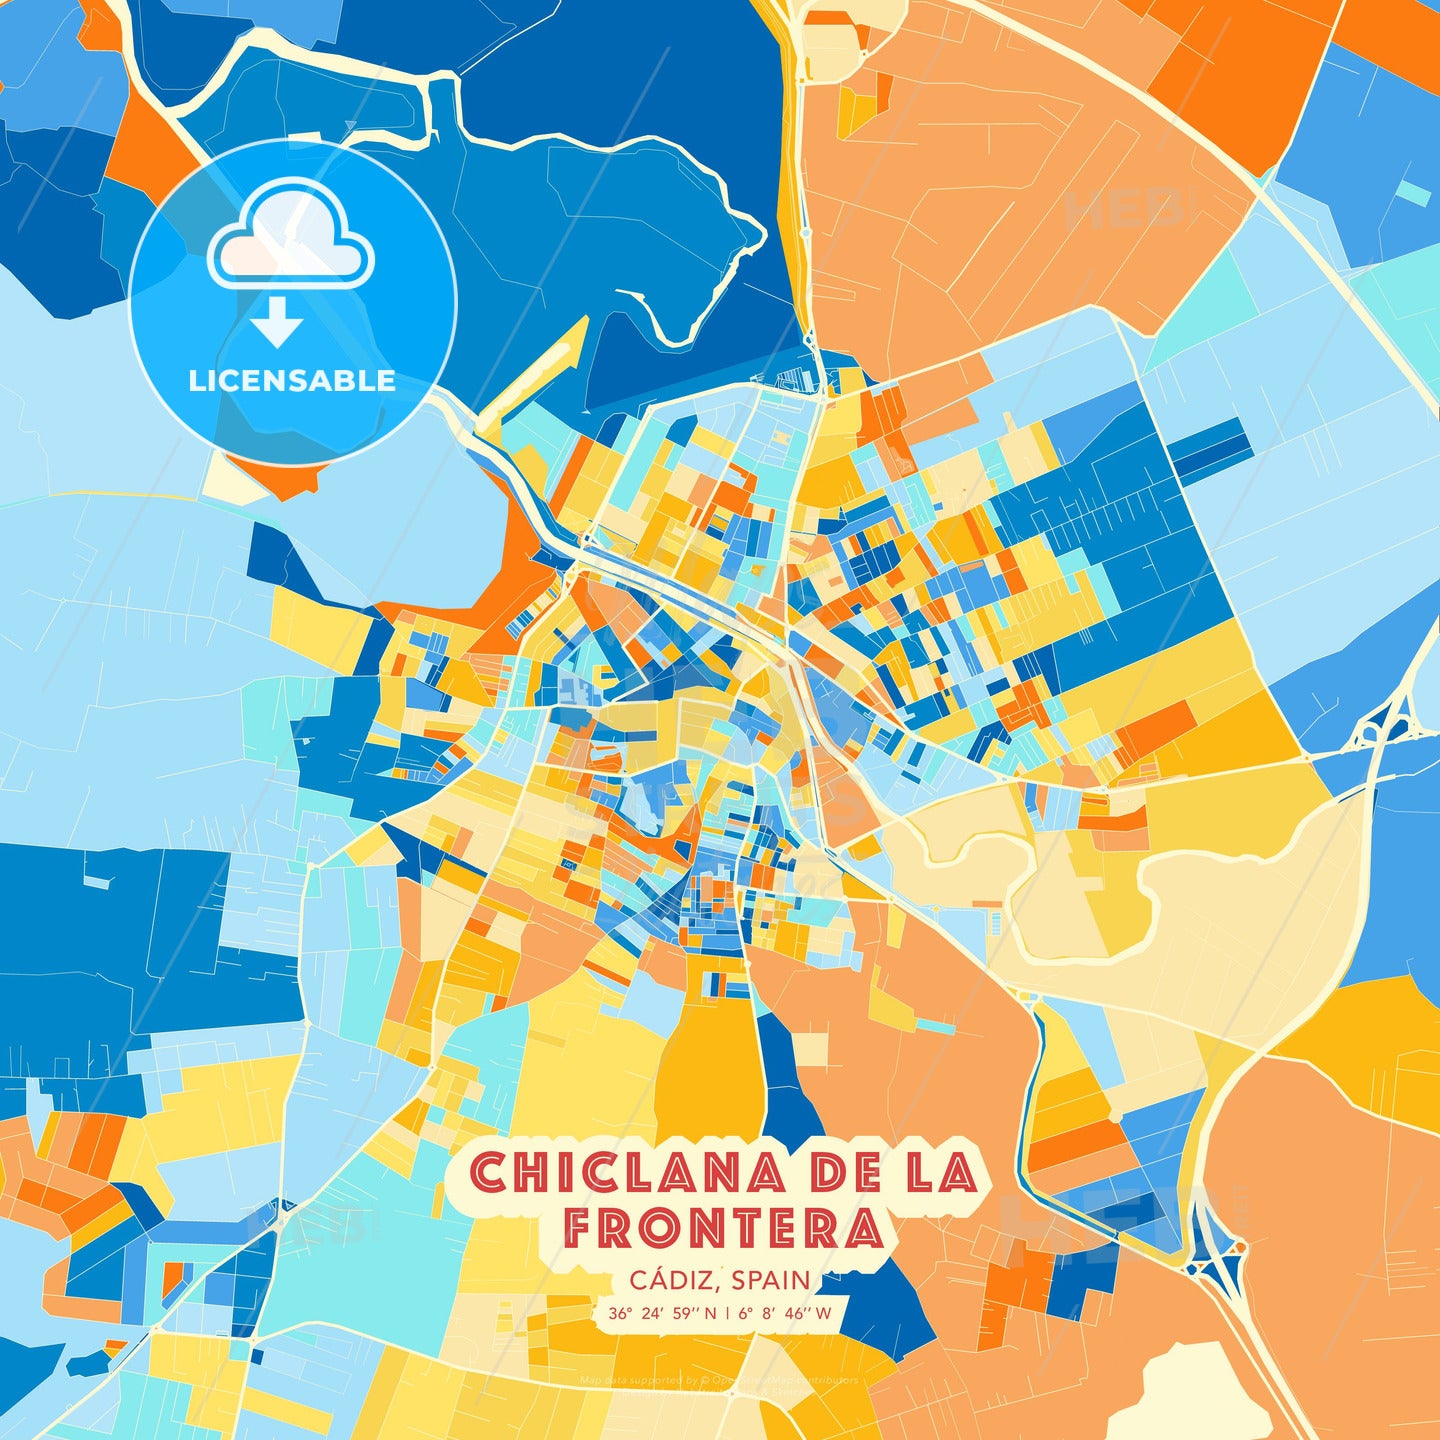 Chiclana de la Frontera, Cádiz, Spain, map - HEBSTREITS Sketches